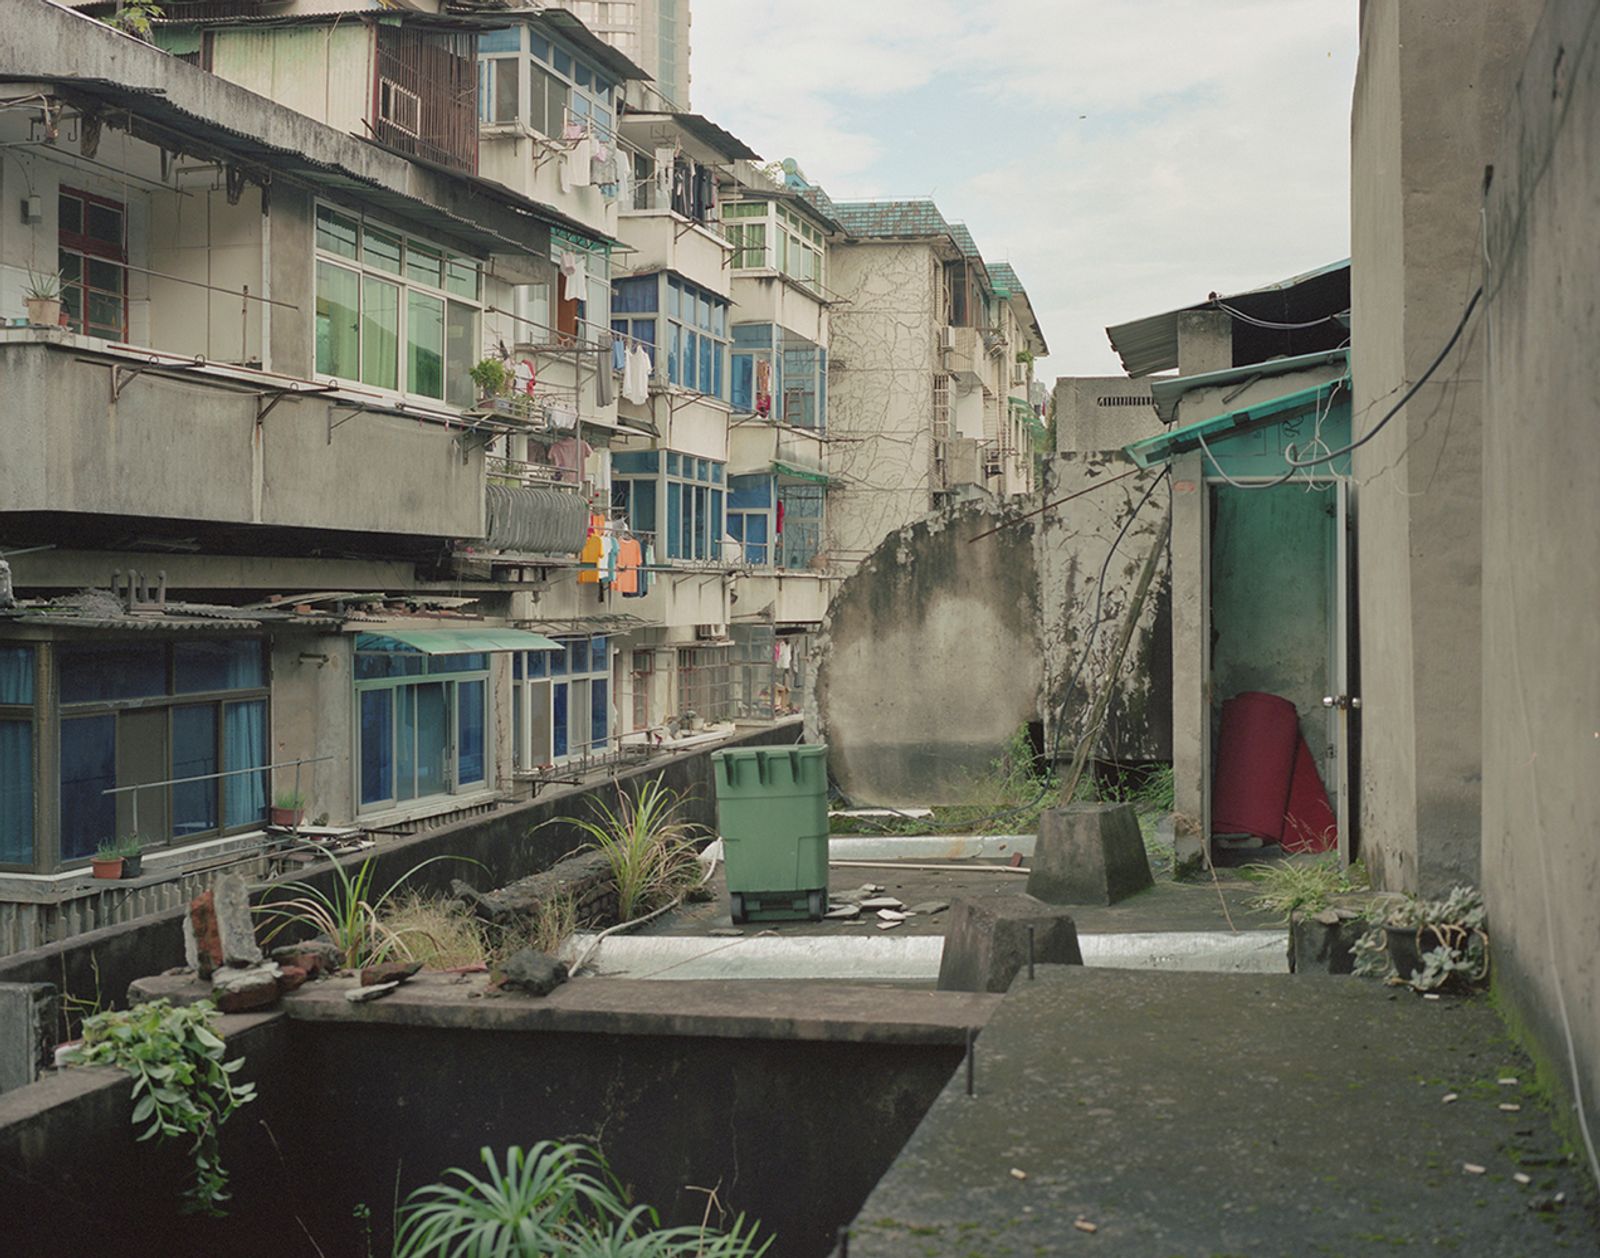 © Bowei Yang - The old home, Hangzhou, China, 2014.